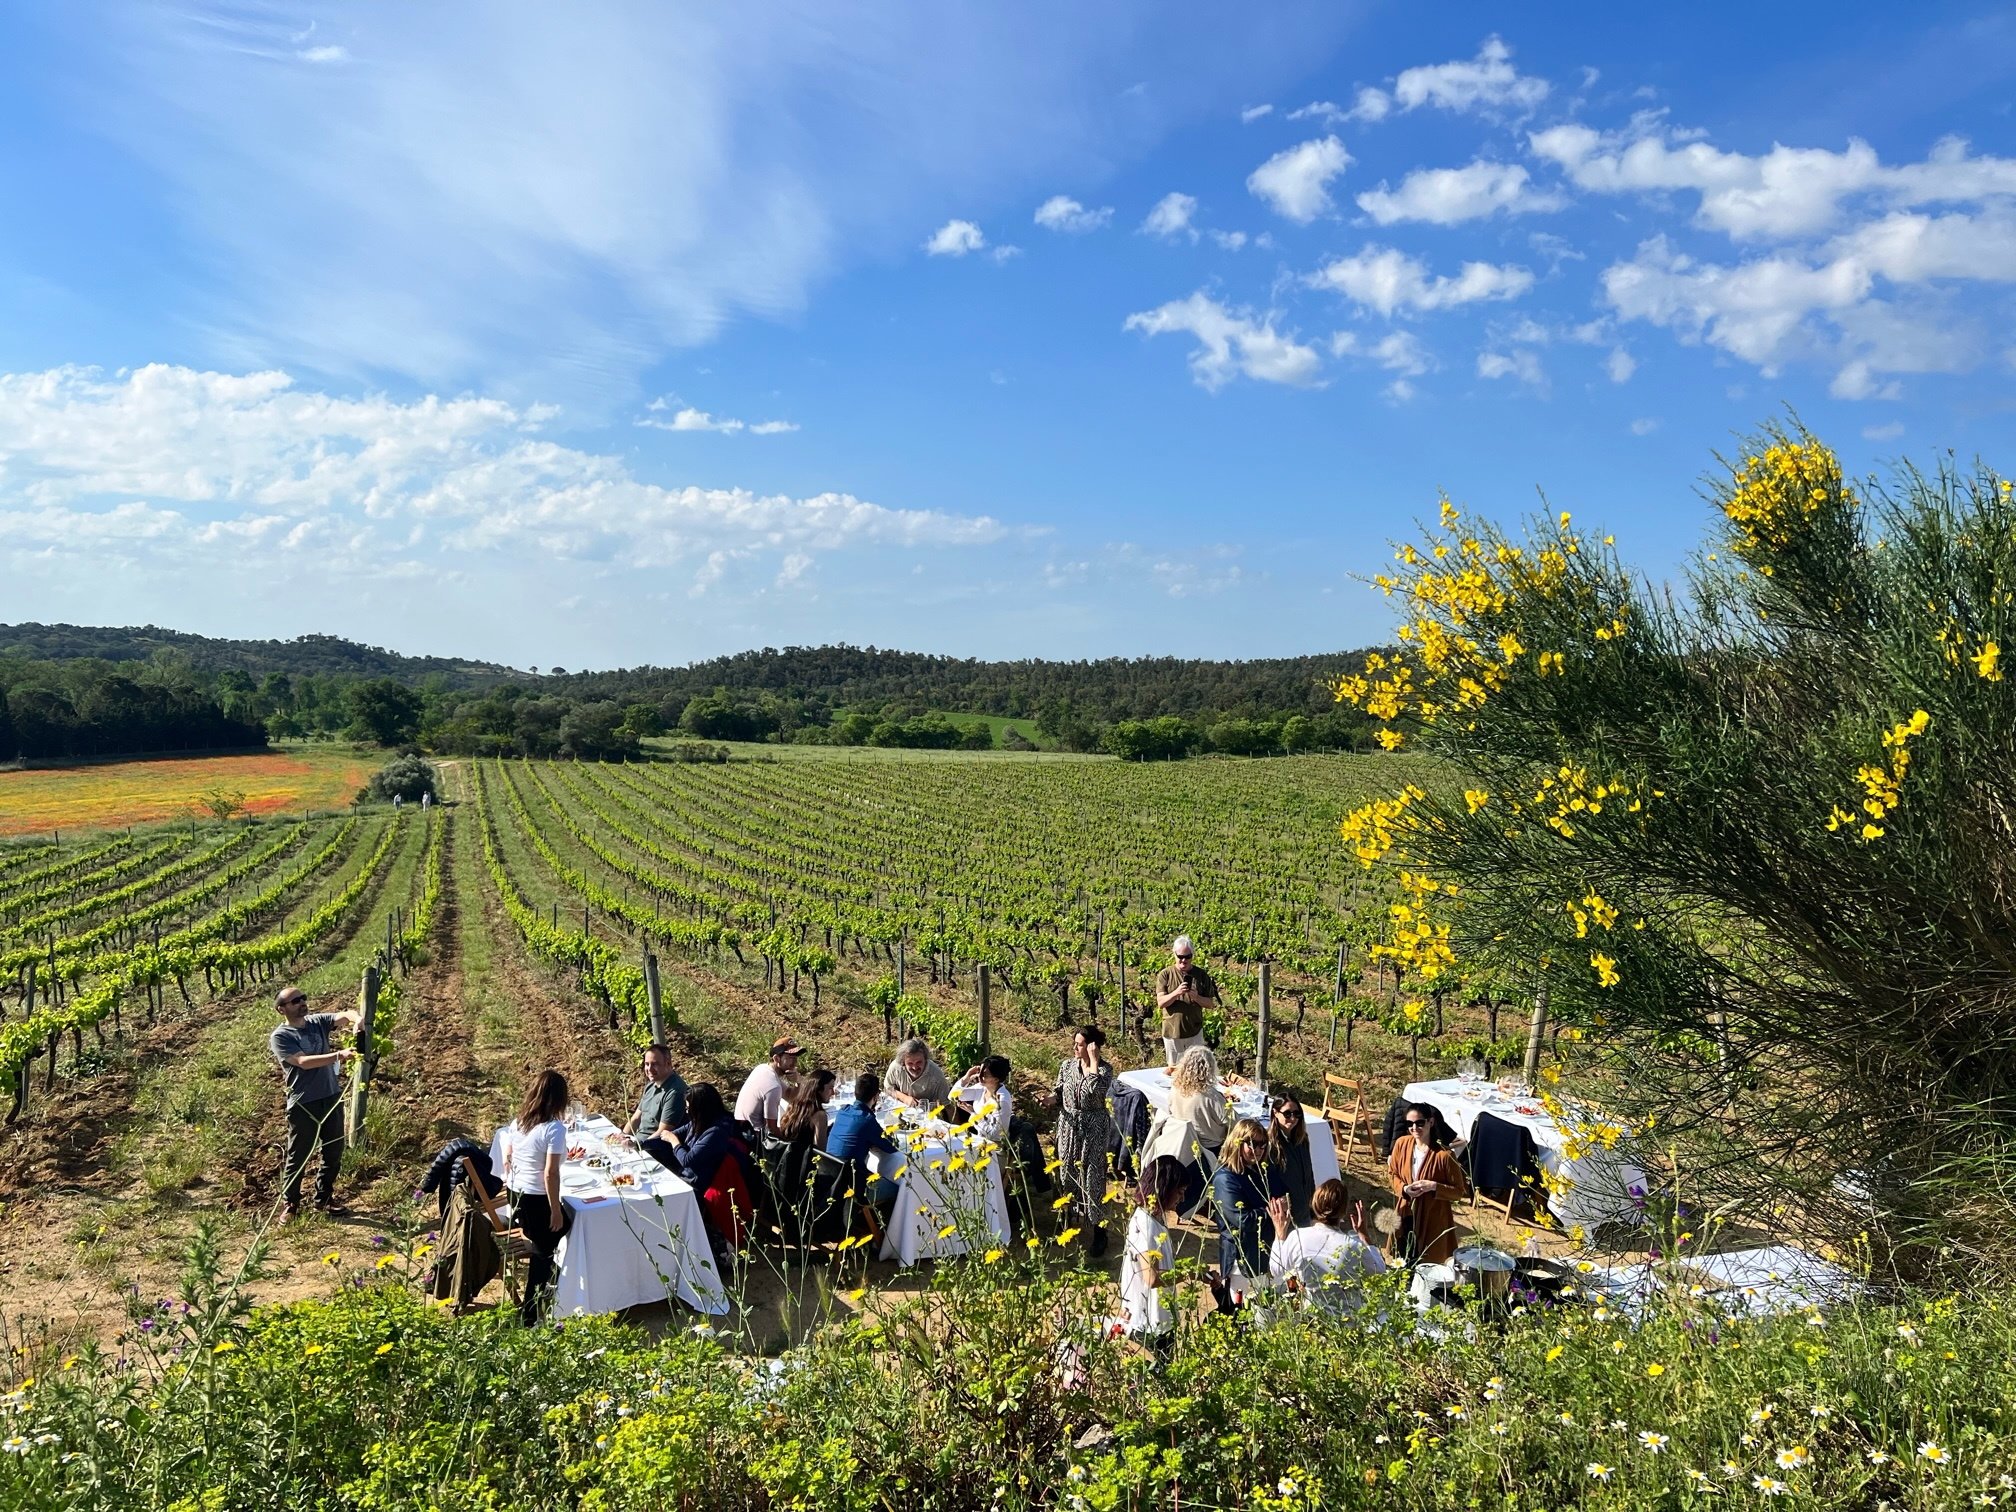 Vuelve el Festival Vívid: 10 planes imperdibles para disfrutar del vino en la Costa Brava